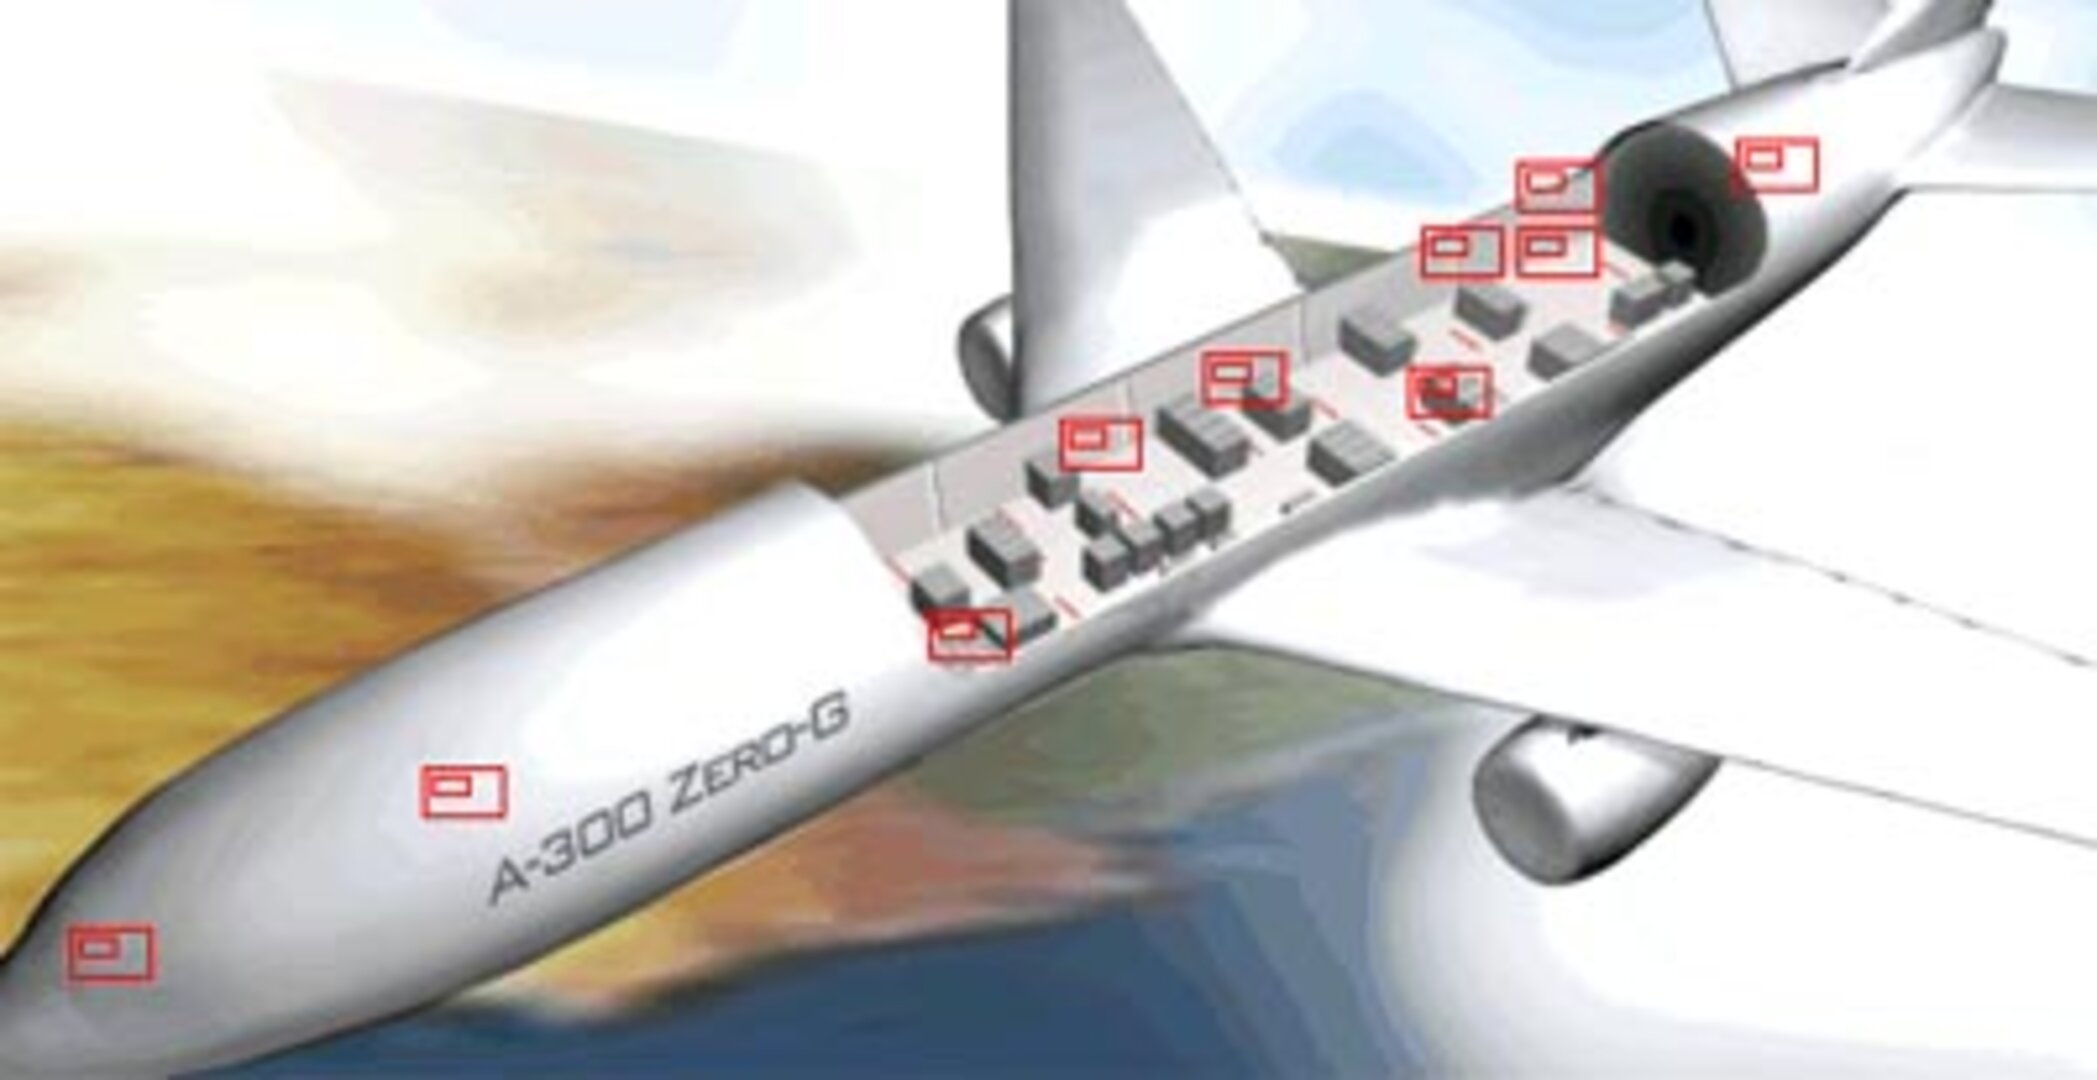 Tutustu painottomuuskone Zero-G A300 Airbusiin tarkemmin hiirellä osoittamalla ja klikkaamalla.